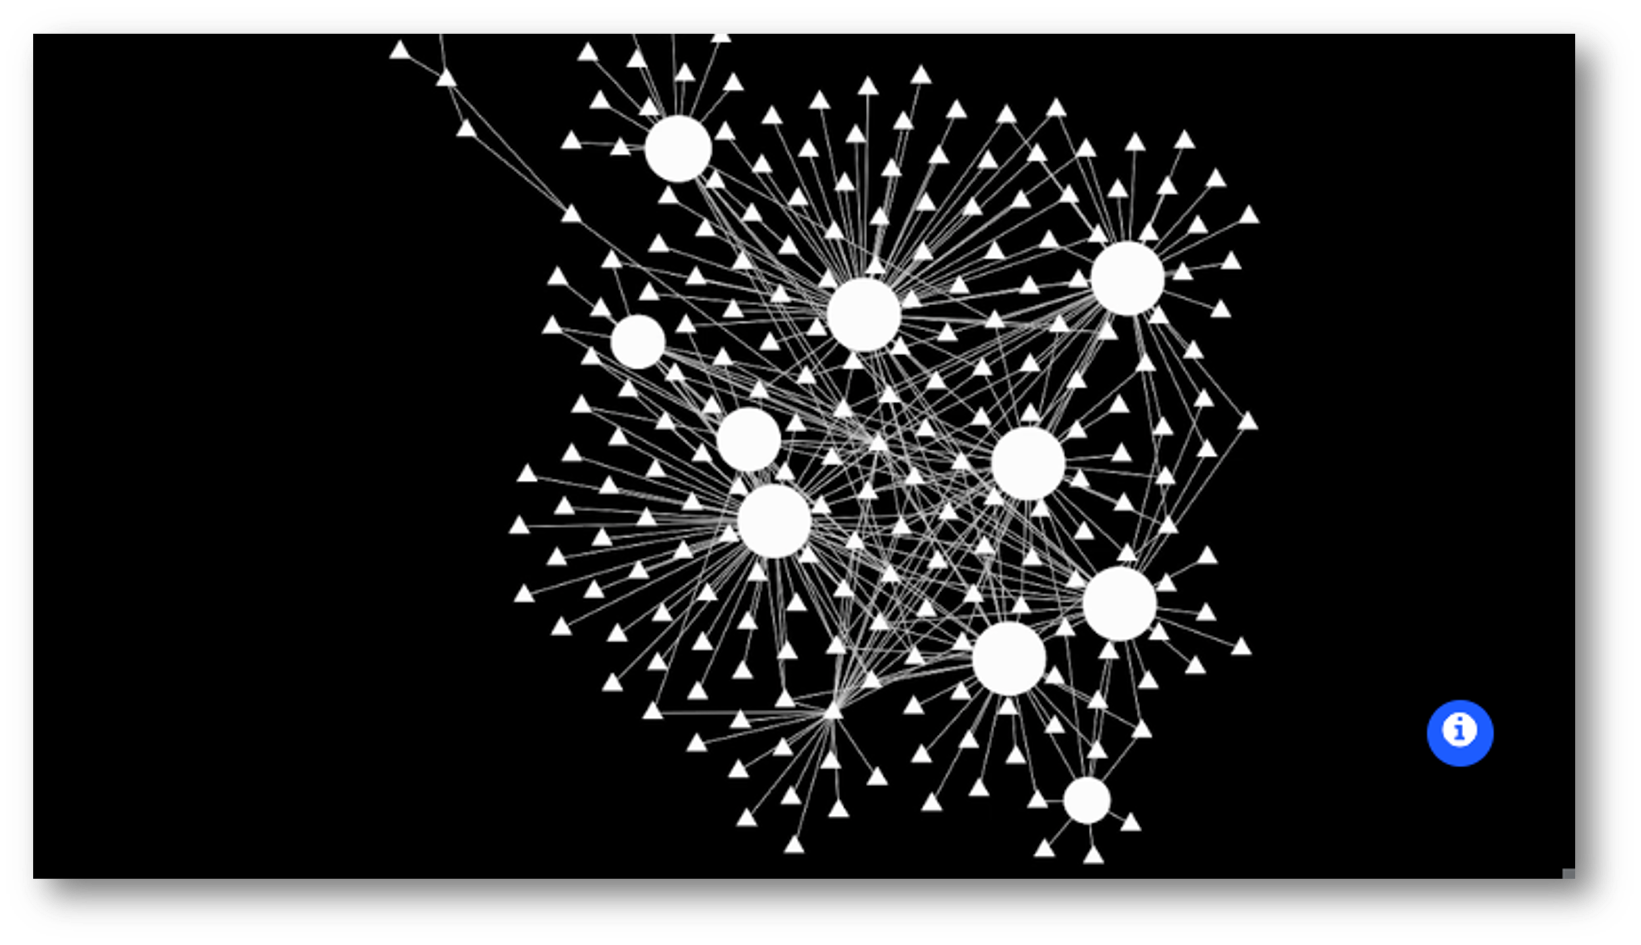 nettverk av punkter på en skjerm som viser sporingsaktivitet